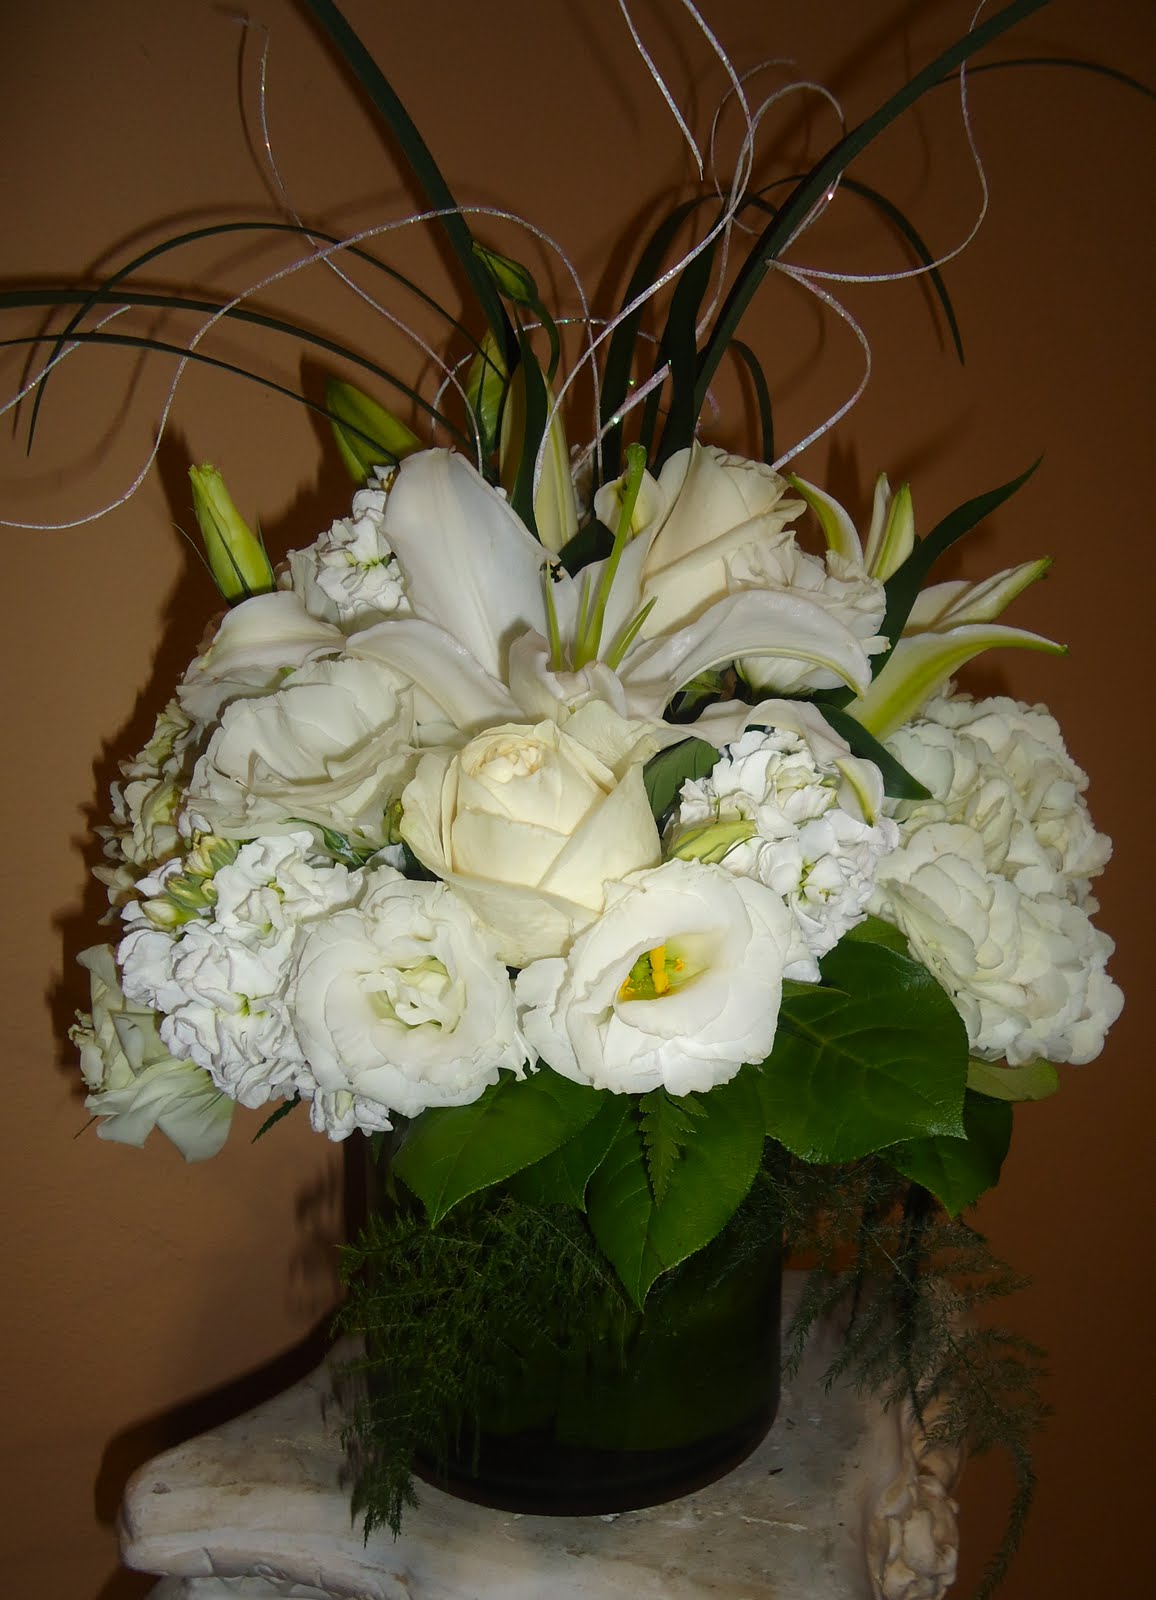 ... blog: Bridal Prom Wedding Ivory Satin Diamante Shoes Size 6 | eBay